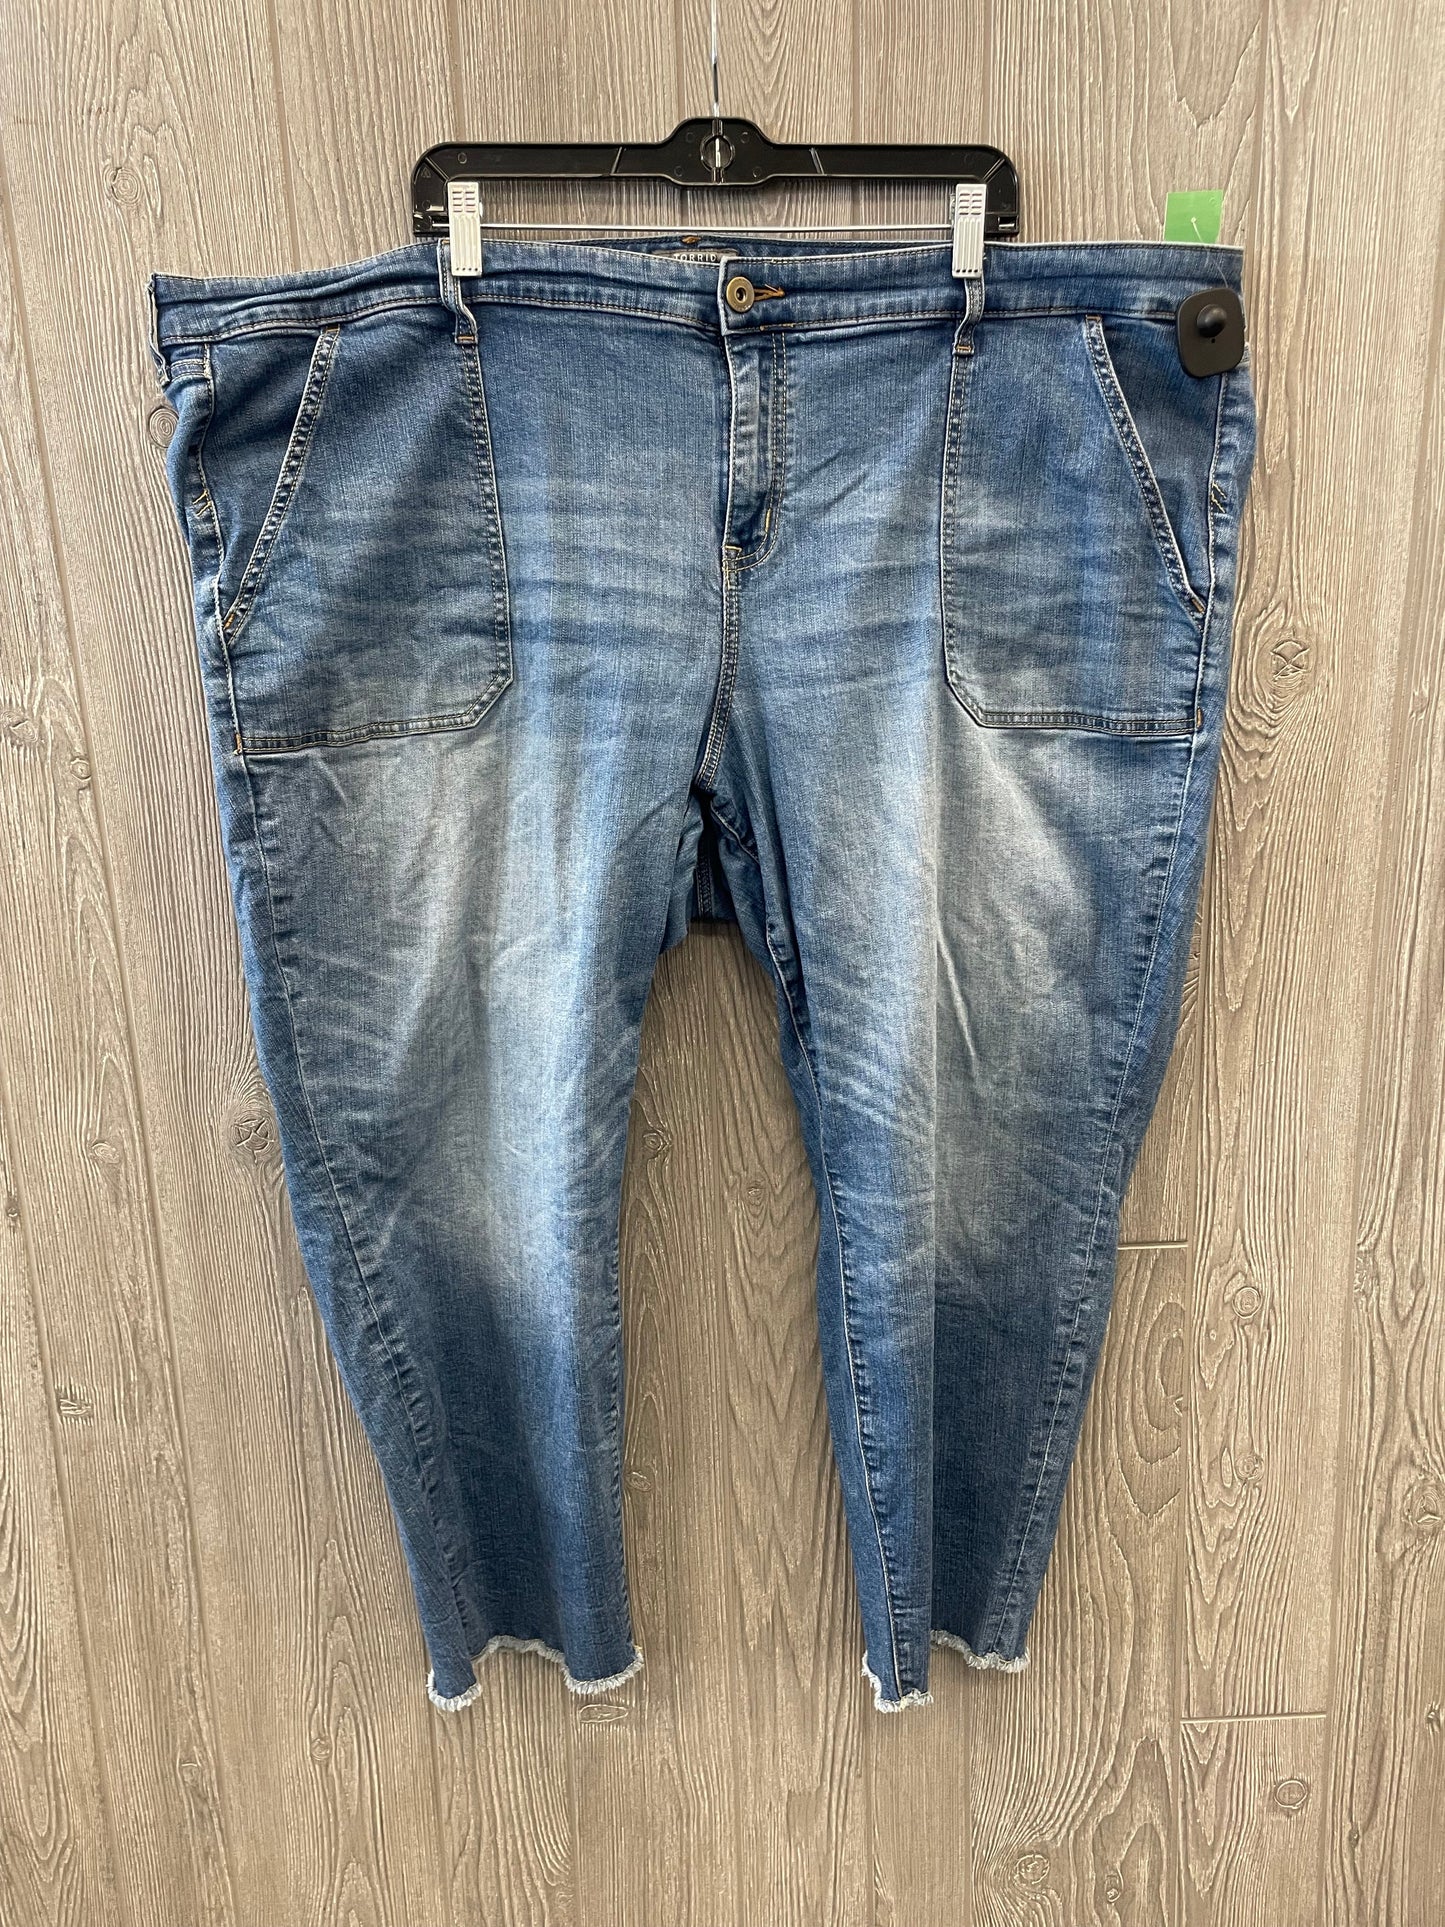 Jeans Boyfriend By Torrid  Size: 28